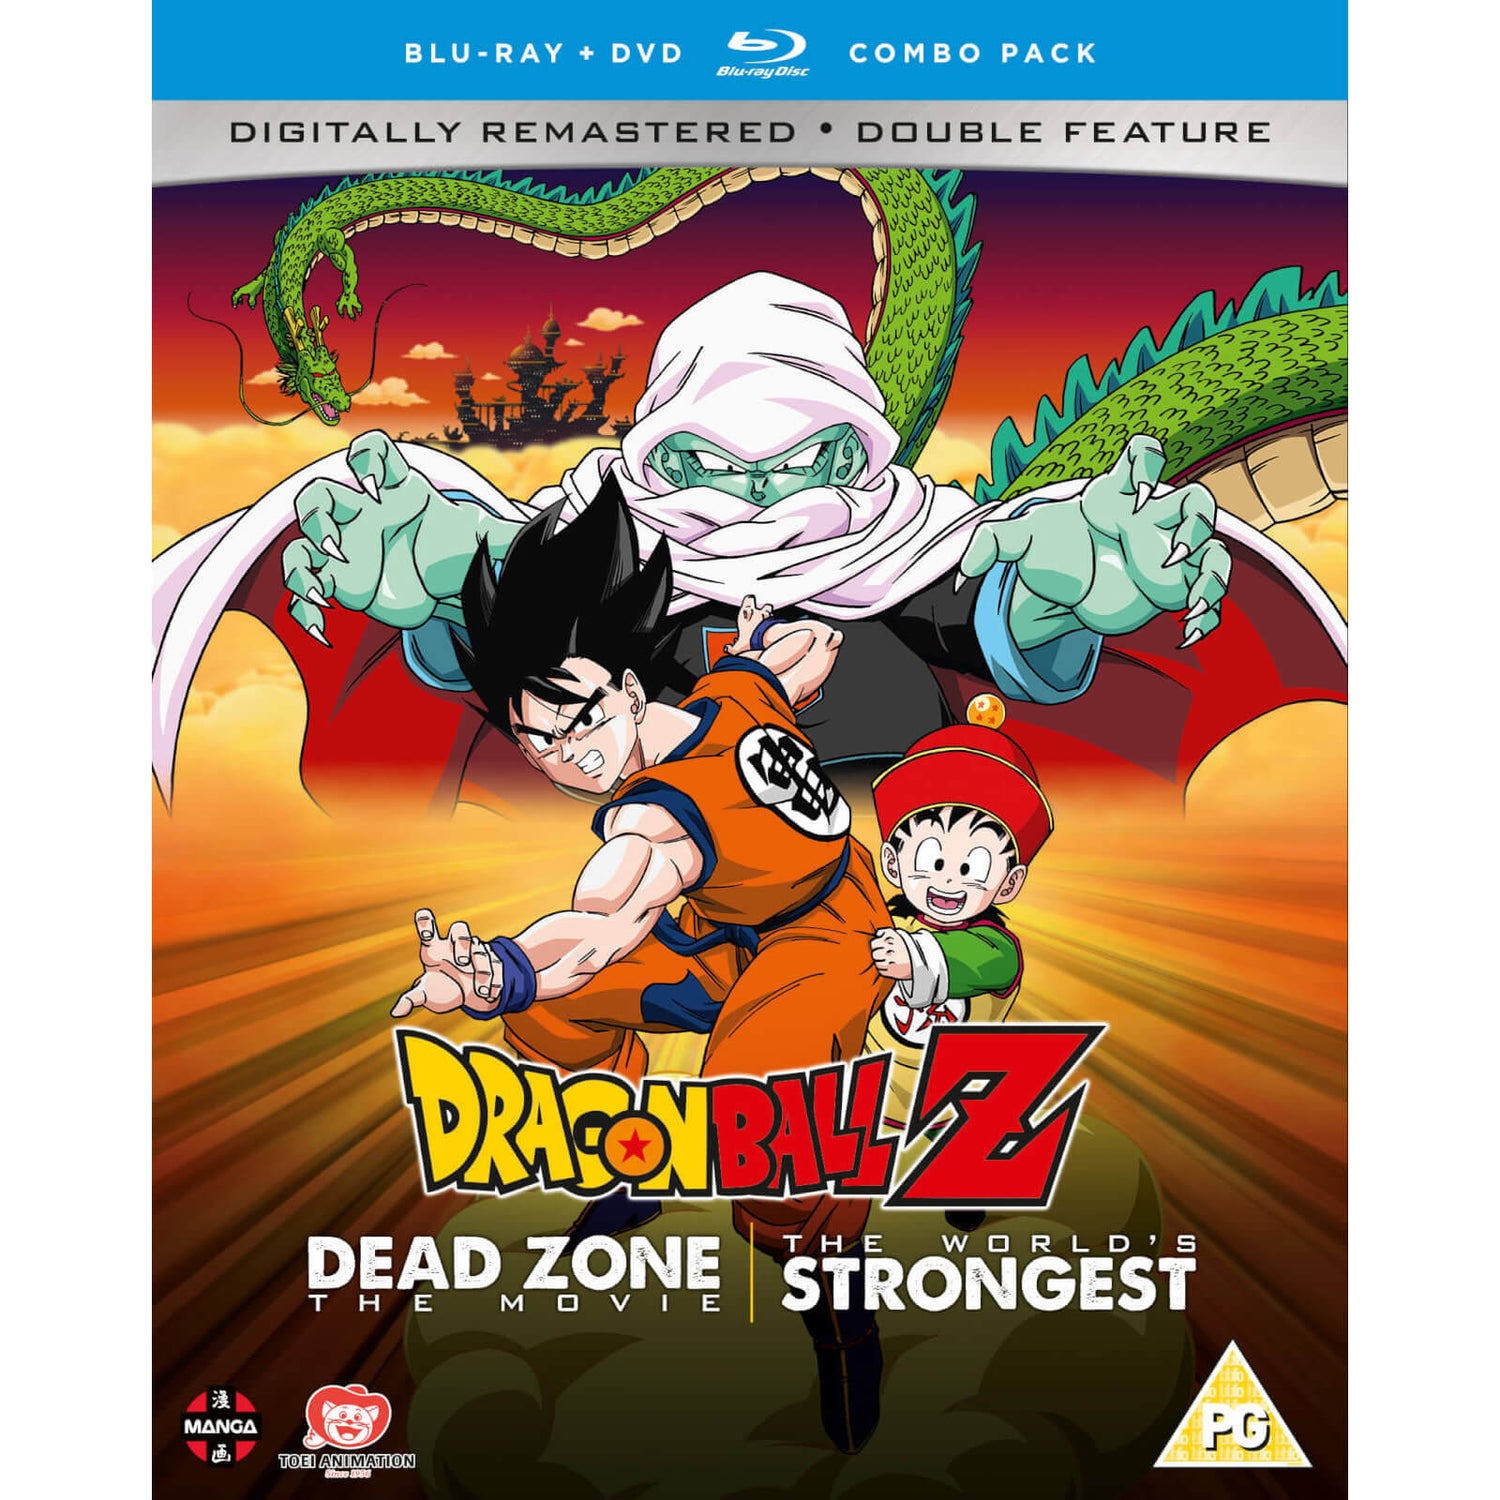 Dragon Ball Z Filmsammlung Eins: Die Todeszone des Garlic jr./Der Stärkste auf Erden